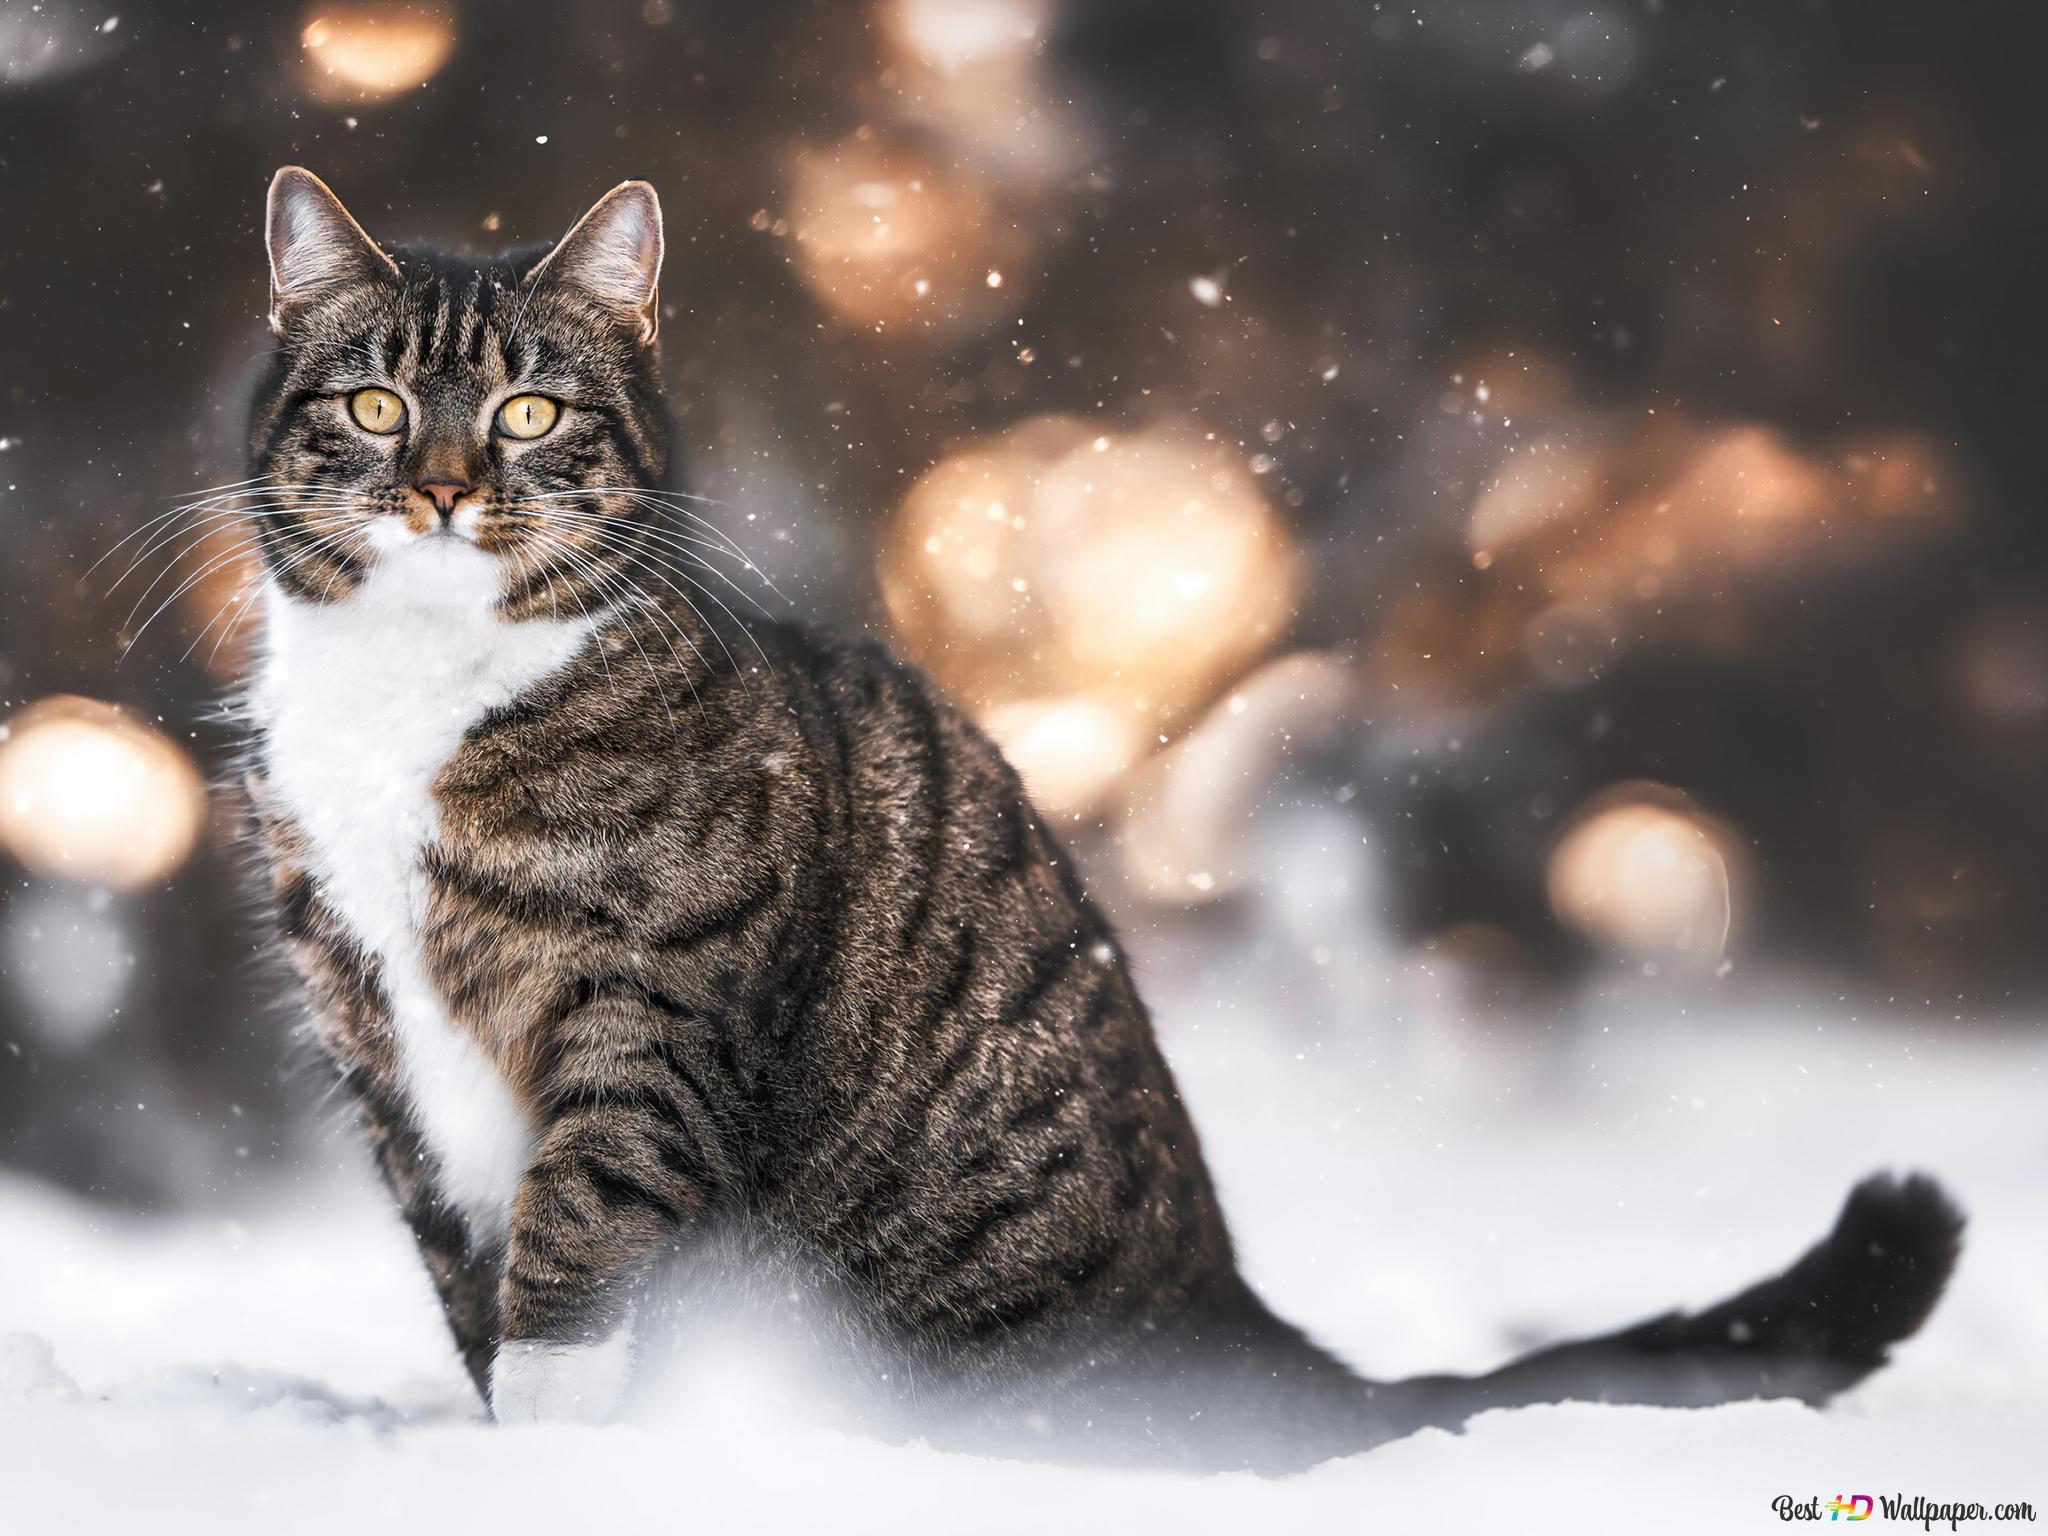  Winter Tiere Hintergrundbild 2048x1536. Katze im Winterschnee 4K Hintergrundbild herunterladen